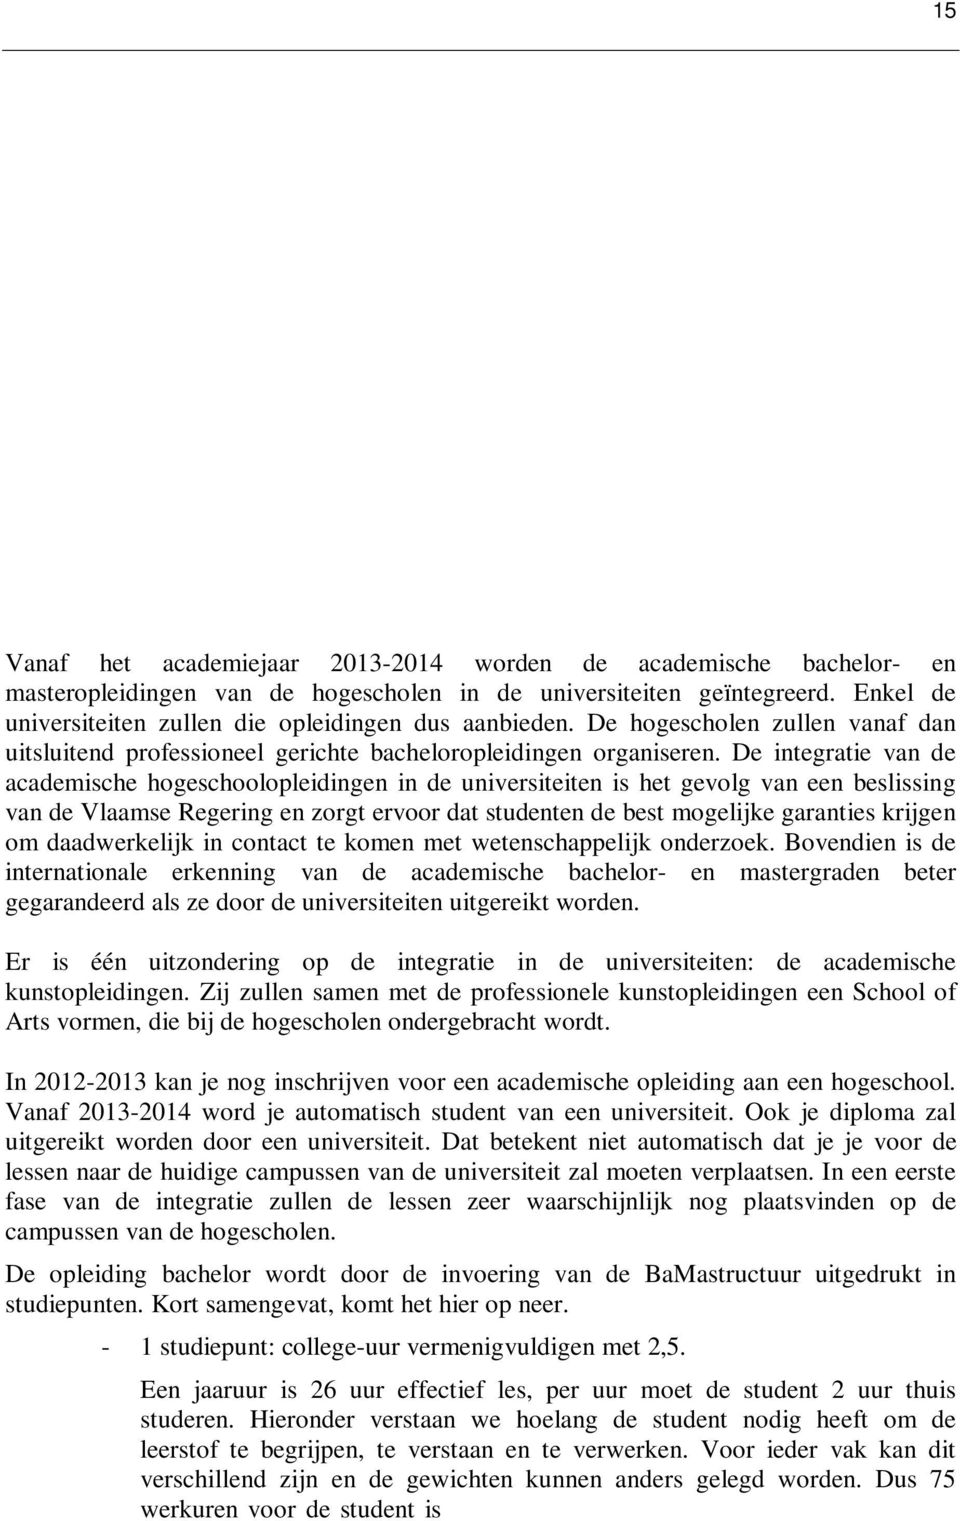 De integratie van de academische hogeschoolopleidingen in de universiteiten is het gevolg van een beslissing van de Vlaamse Regering en zorgt ervoor dat studenten de best mogelijke garanties krijgen